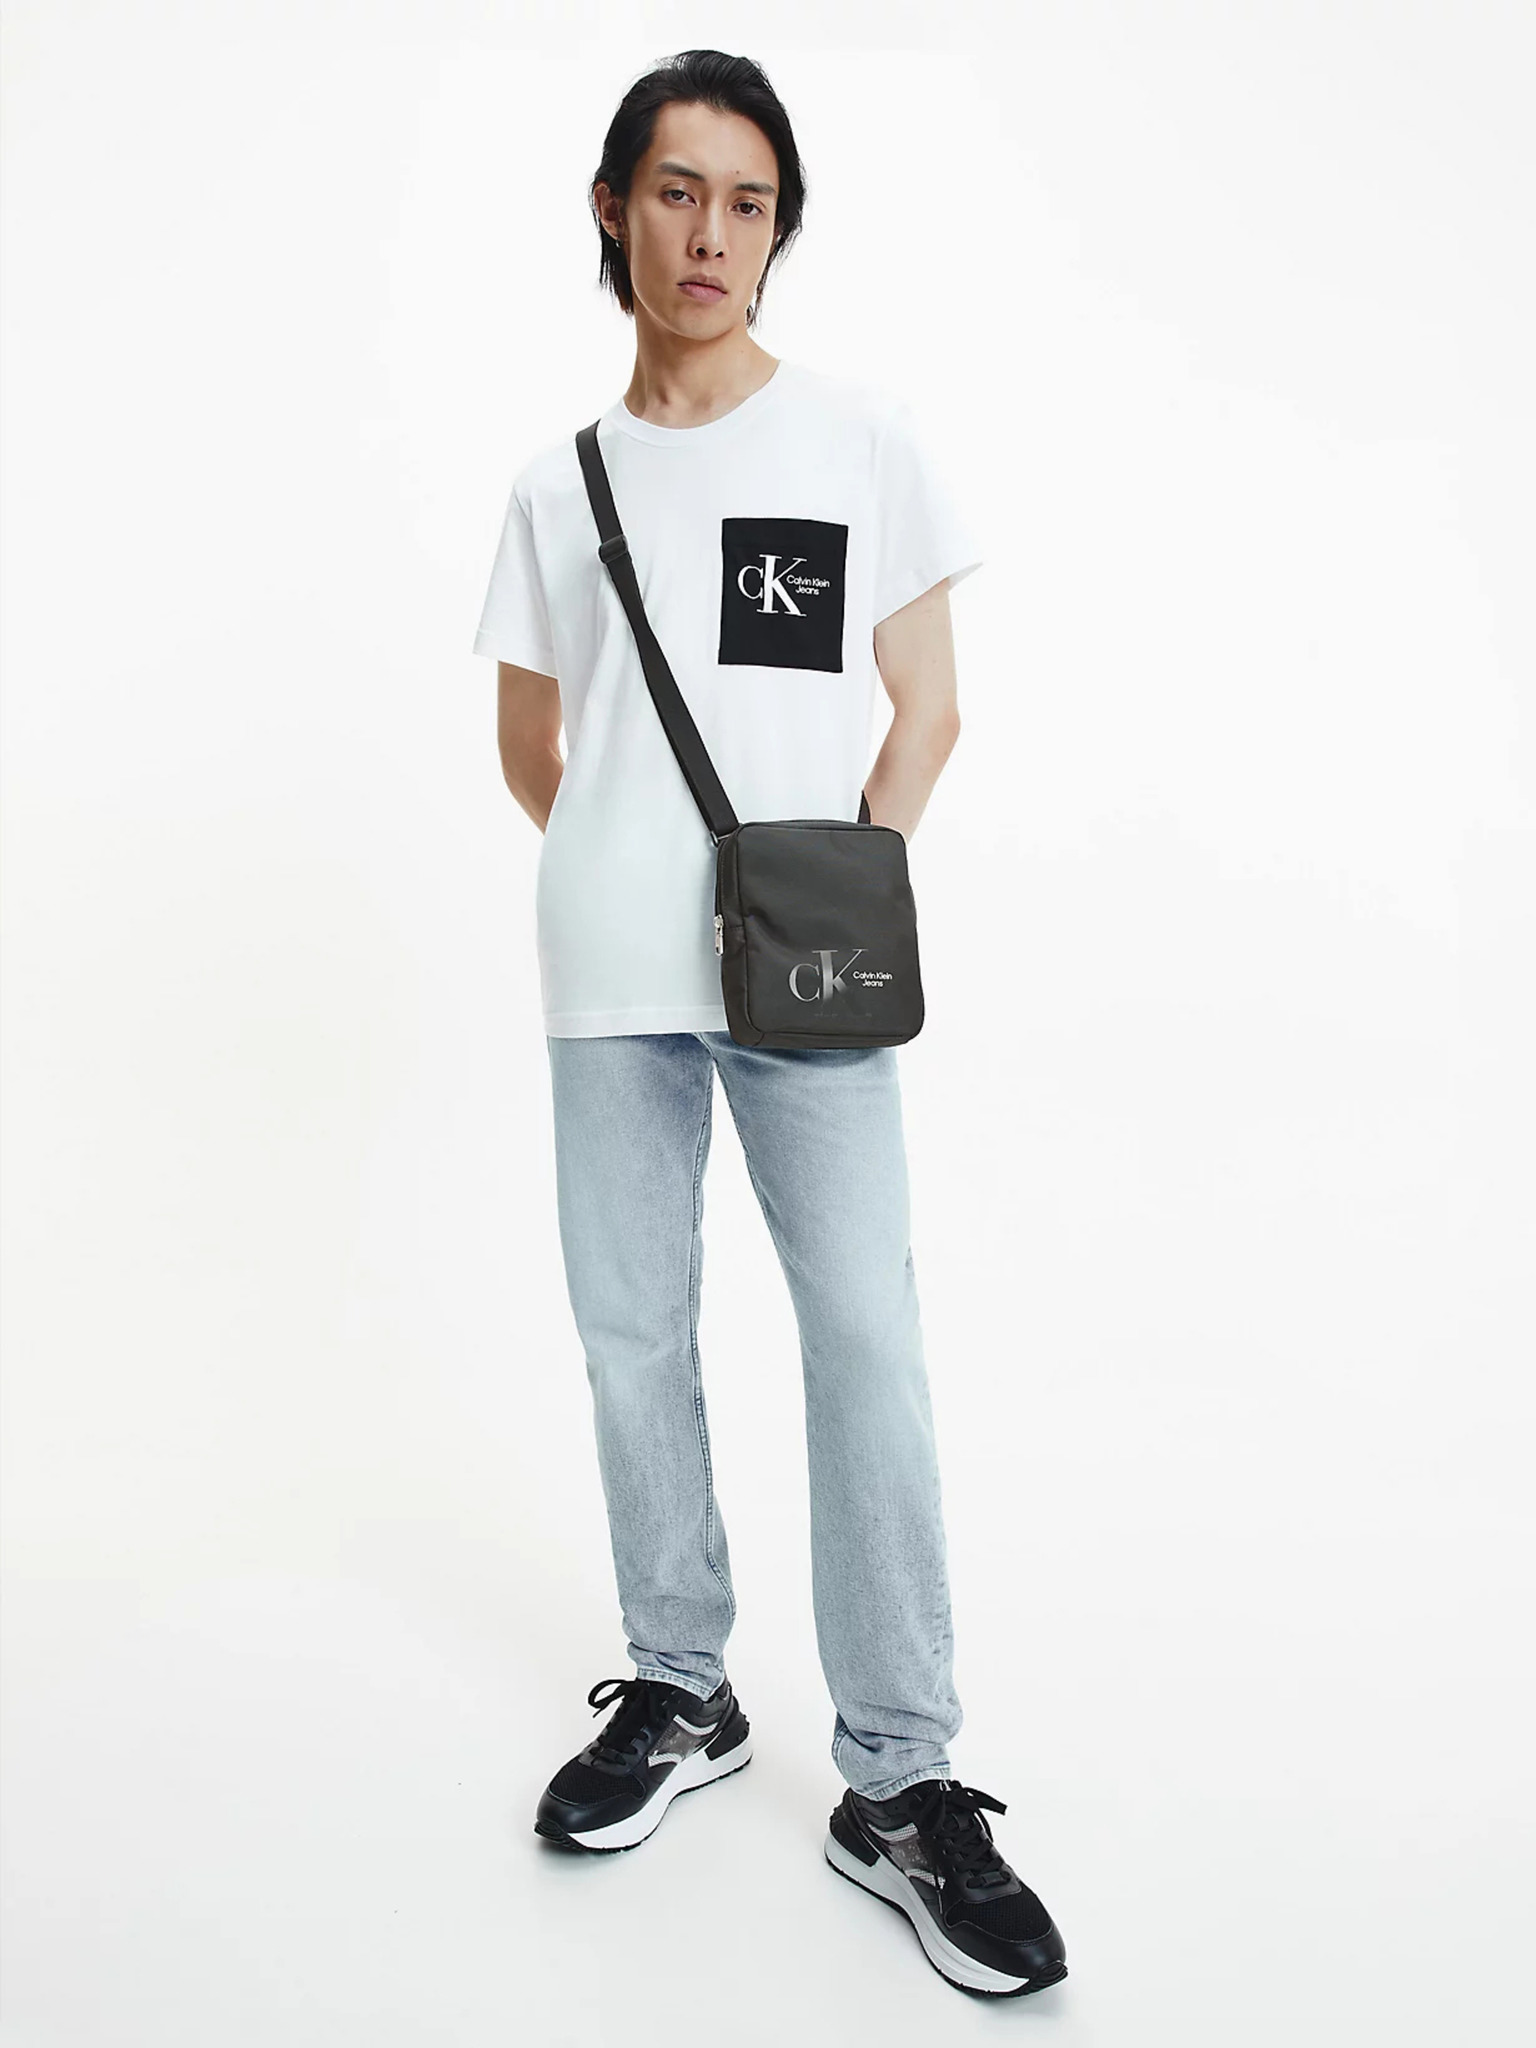 Calvin Klein Men's Crossbody Bag